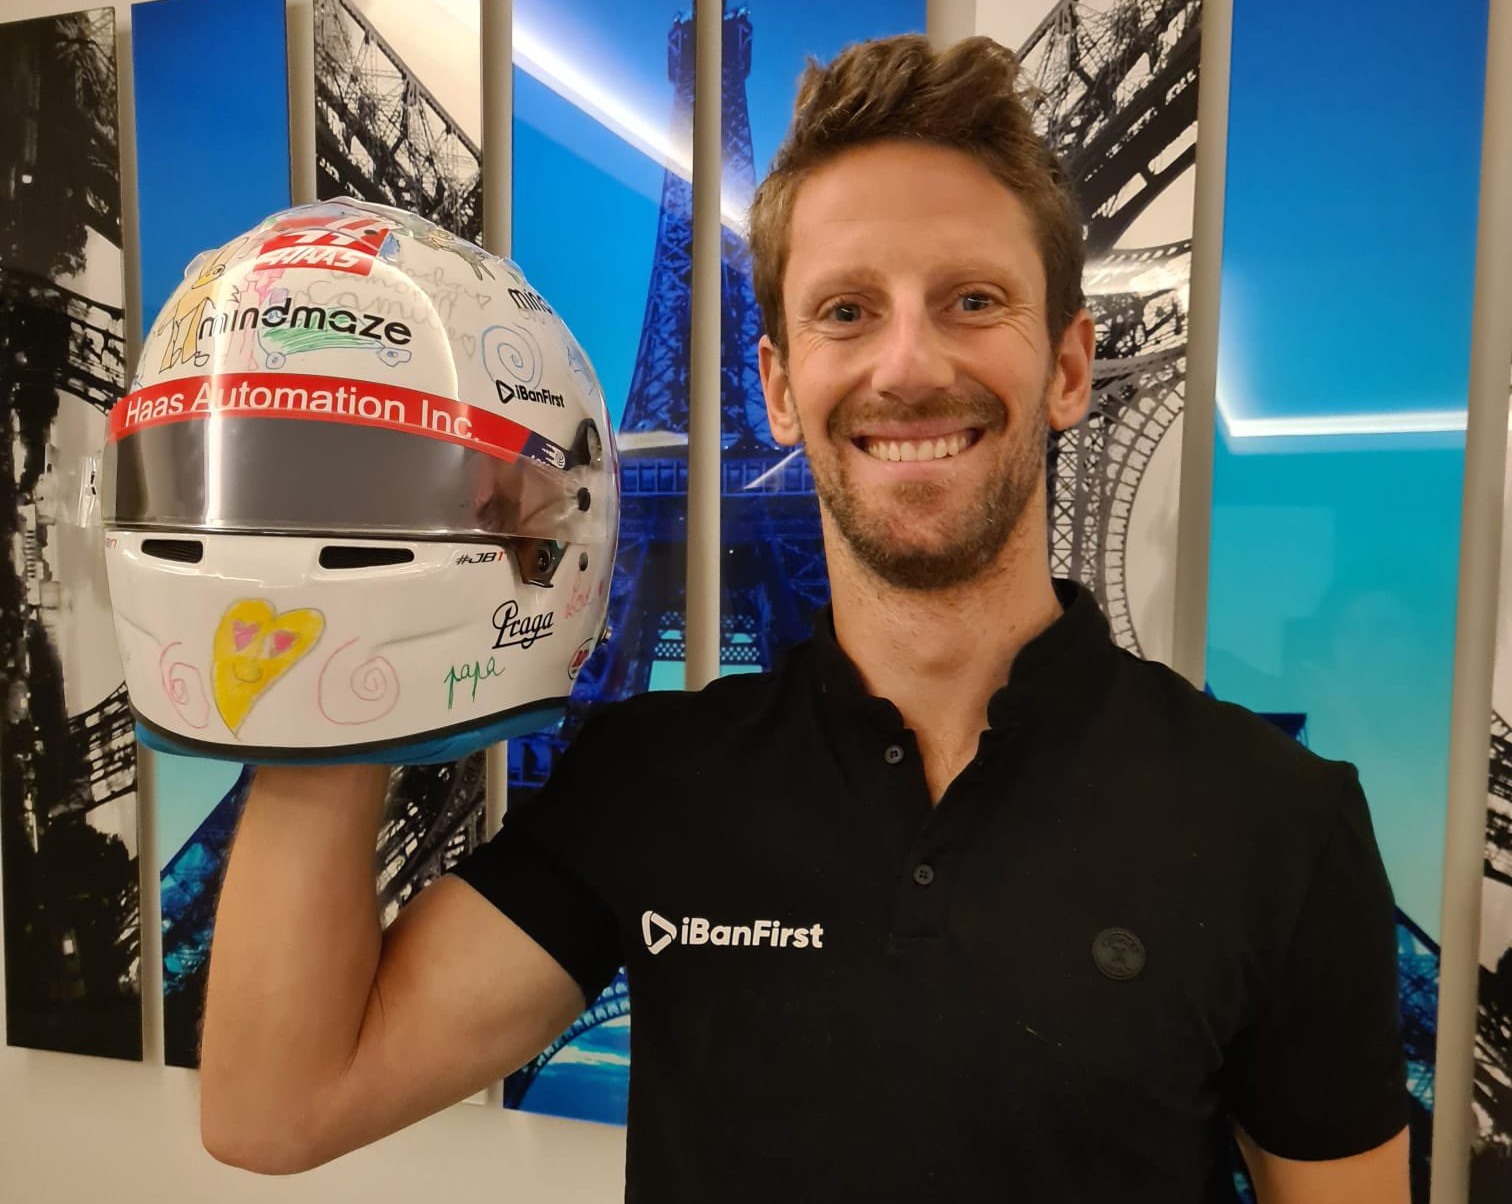 Romain Grosjean's 2020 Abu Dhabi Grand Prix helmet